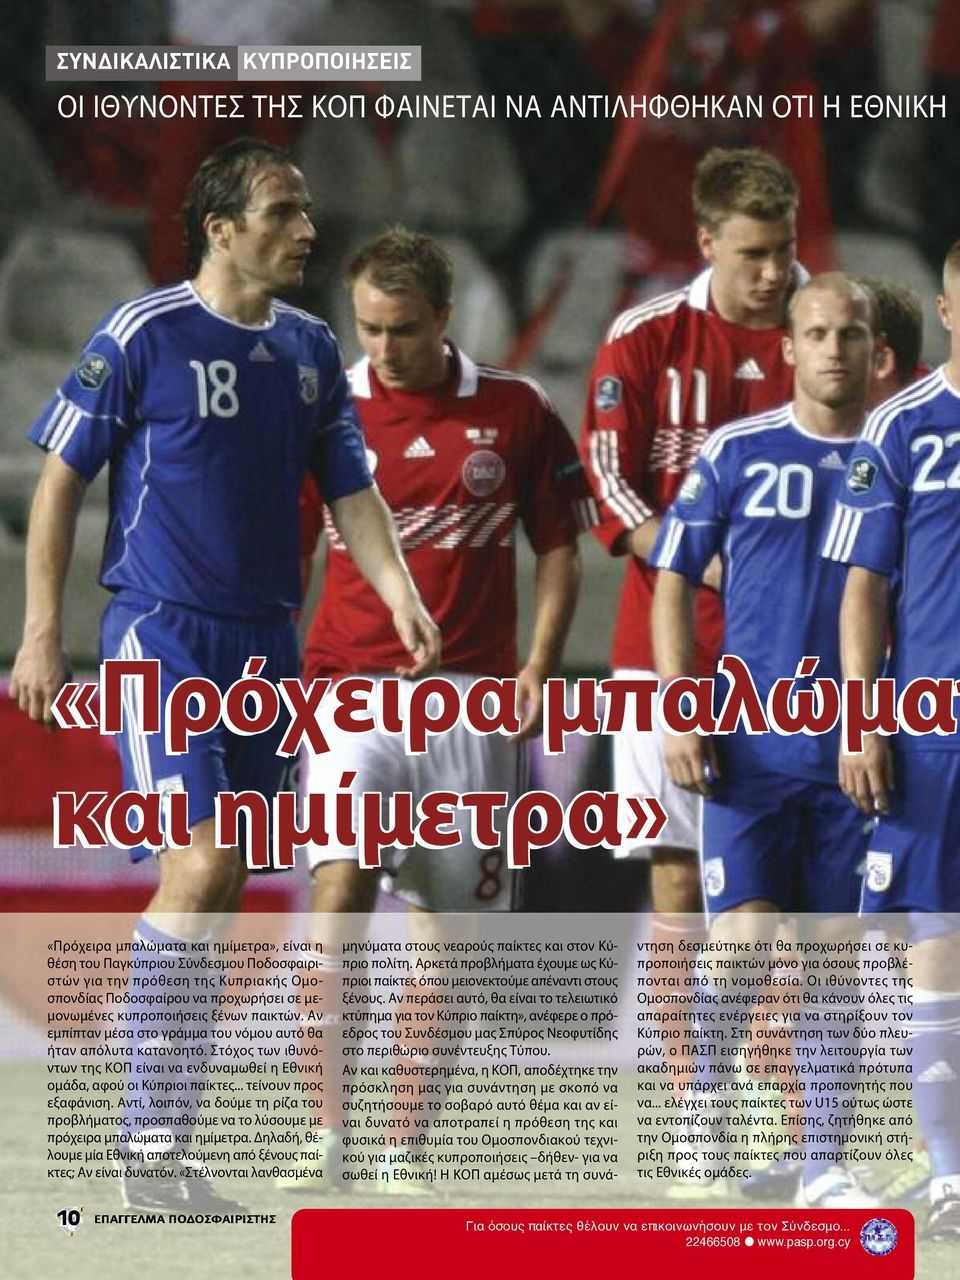 Στόχος των ιθυνόντων της ΚΟΠ είναι να ενδυναμωθεί η Εθνική ομάδα, αφού οι Κύπριοι παίκτες... τείνουν προς εξαφάνιση.